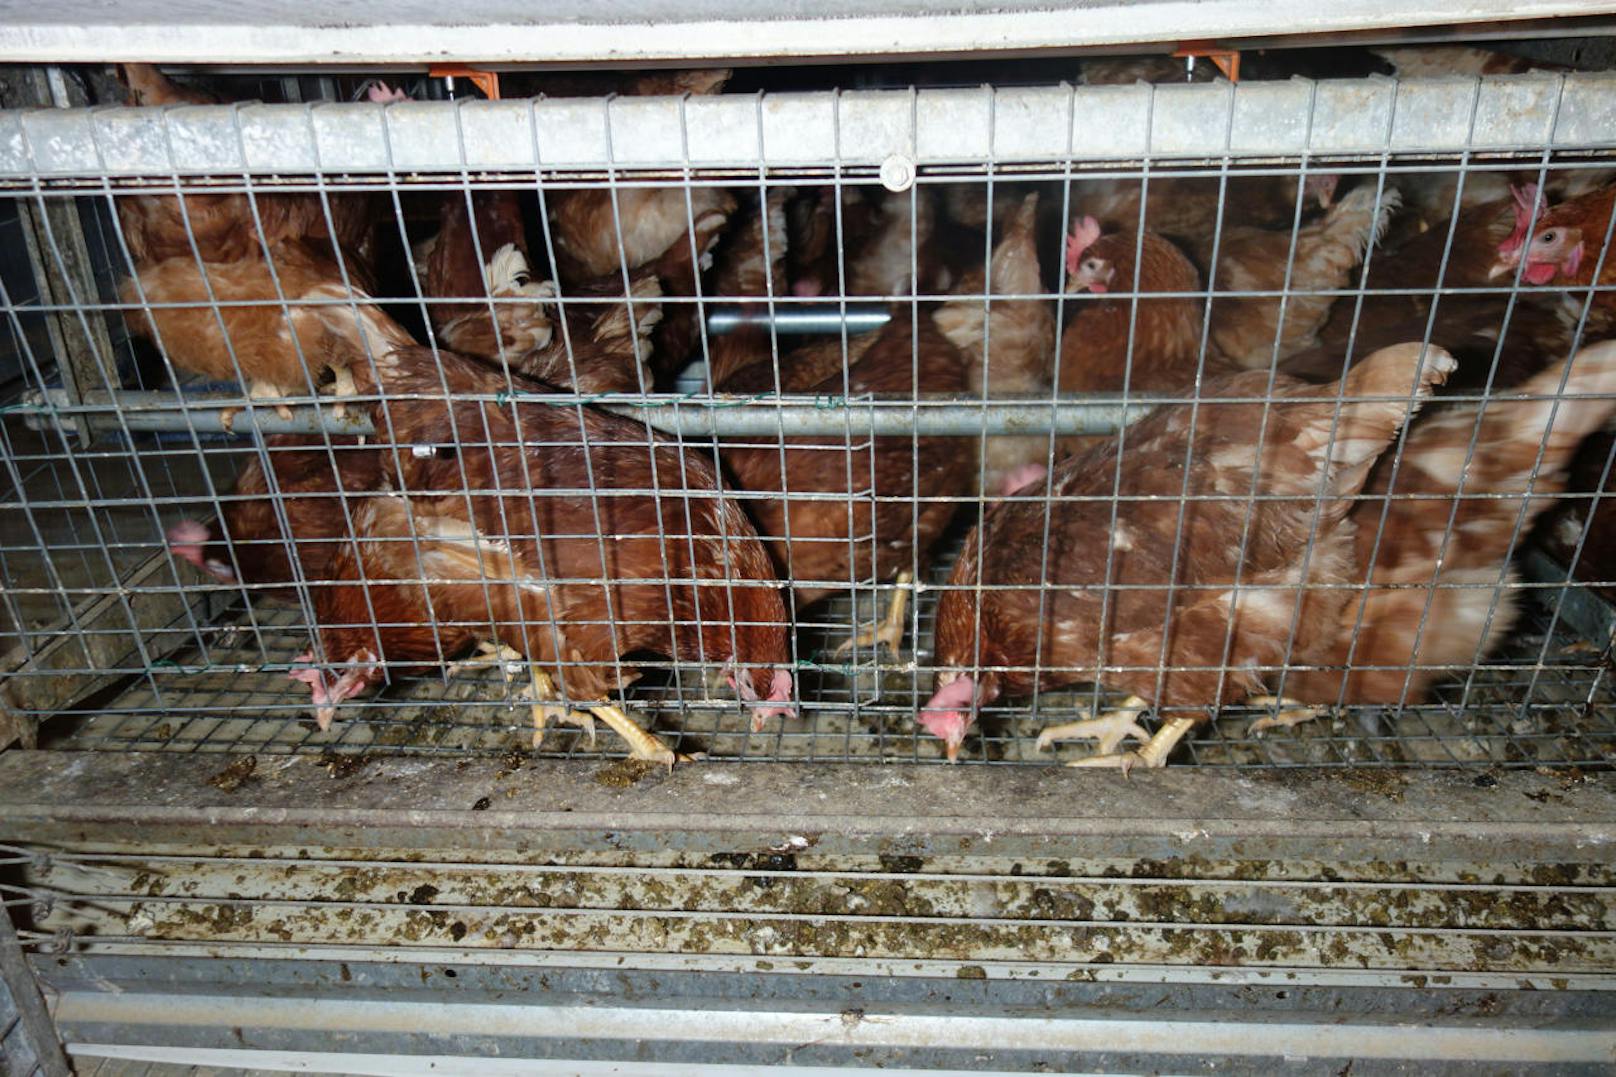 "Ein einfacher Gittermechanismus versperrt den Hühnern permanent den Zugang zum Stallboden und macht aus der angeblichen Bodenhaltung eine illegale Käfighaltung.", erklärt Richter vom VGT.